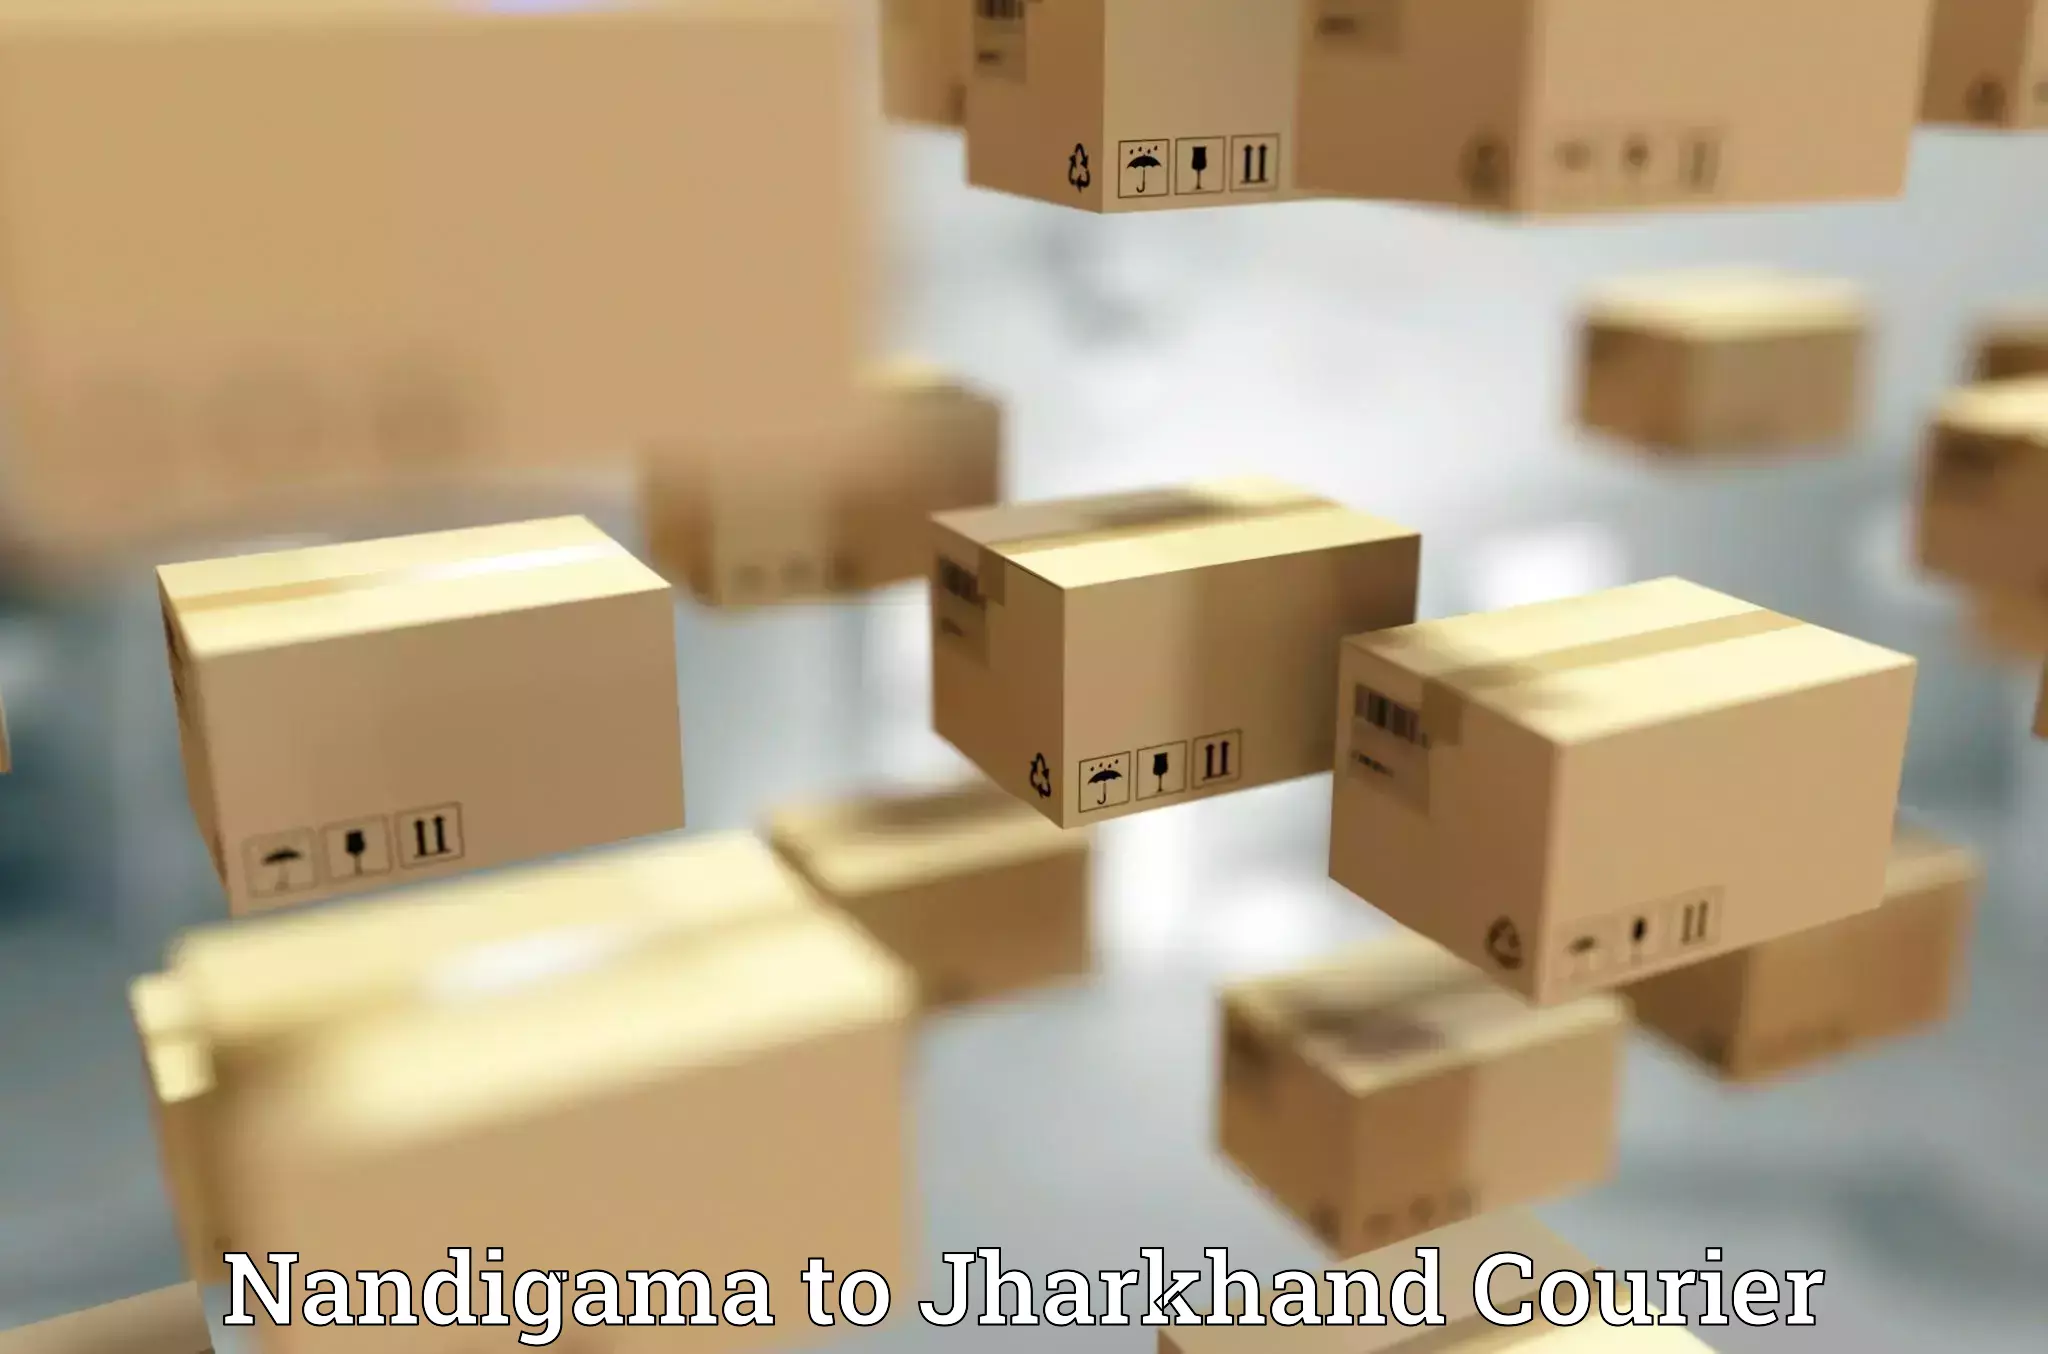 Efficient parcel service Nandigama to Medininagar